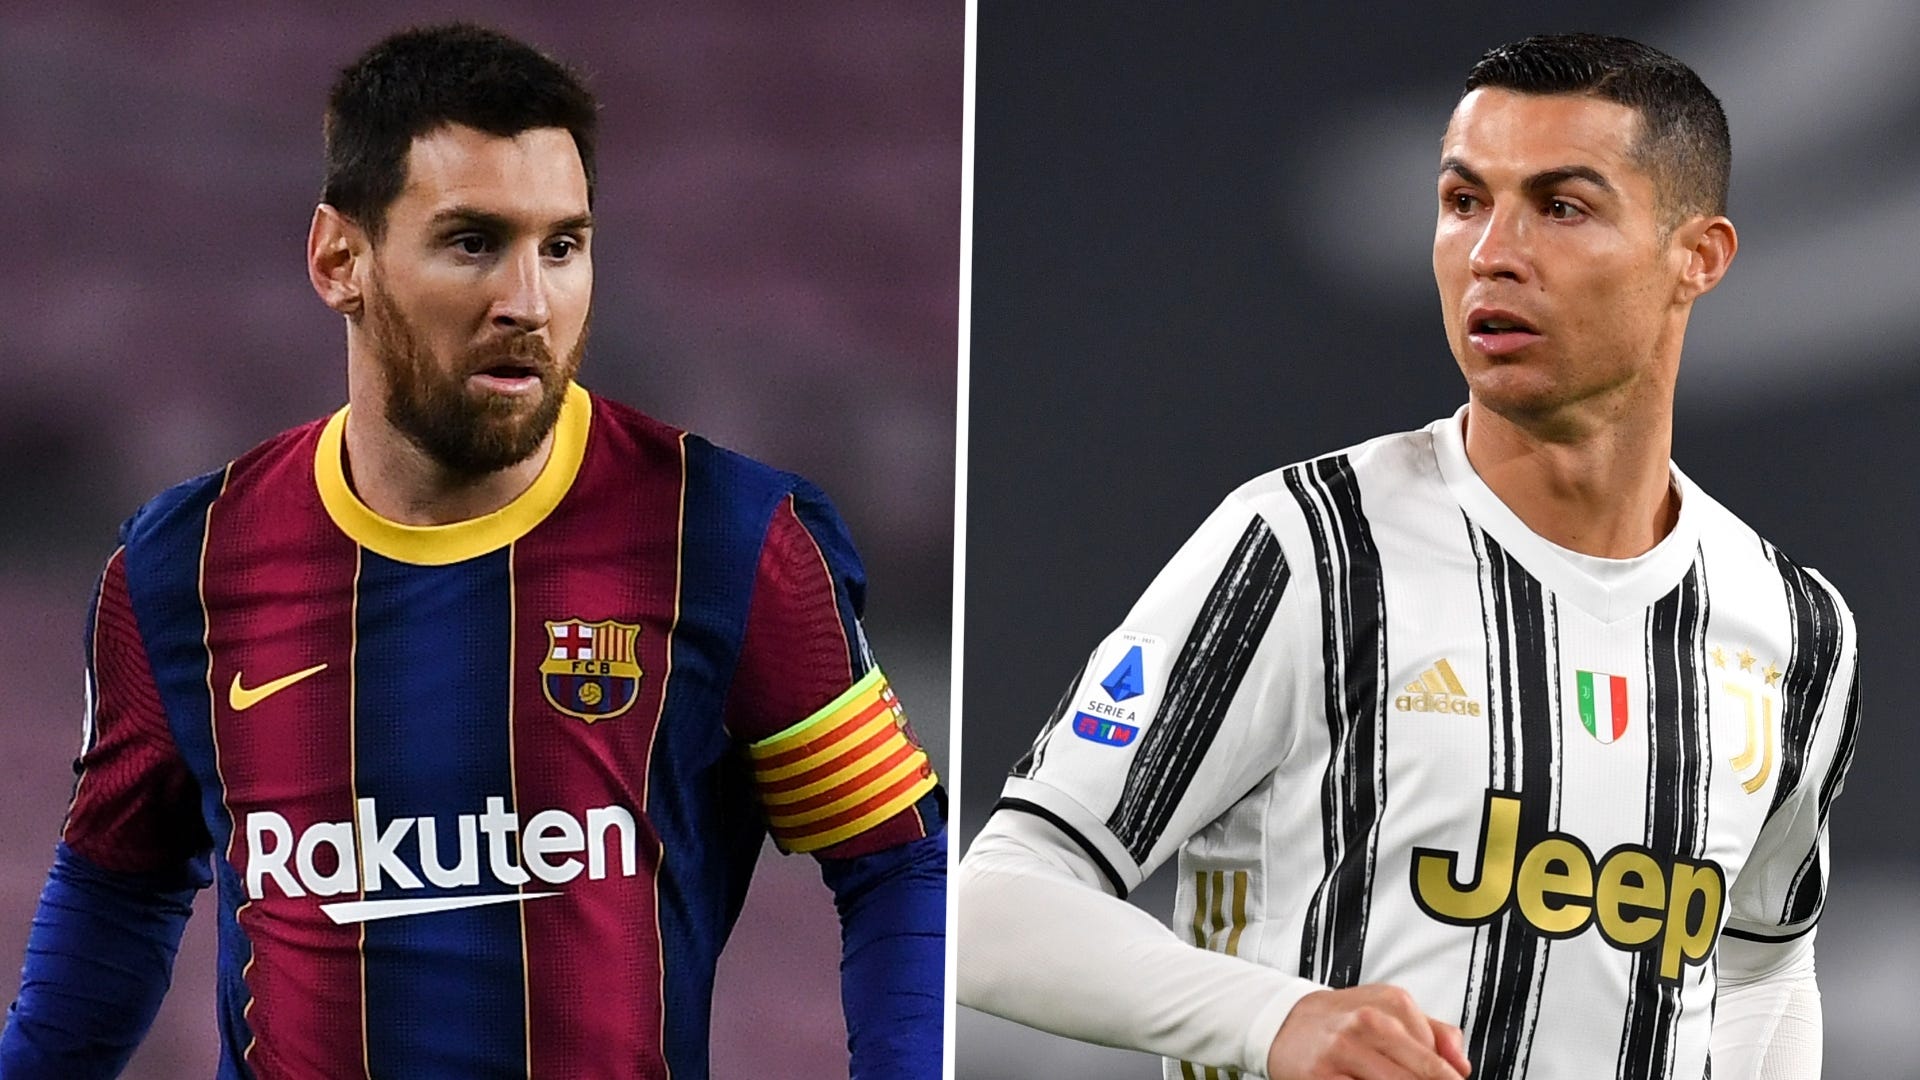 We're attentive' - PSG chief Leonardo responds to Messi and Ronaldo links